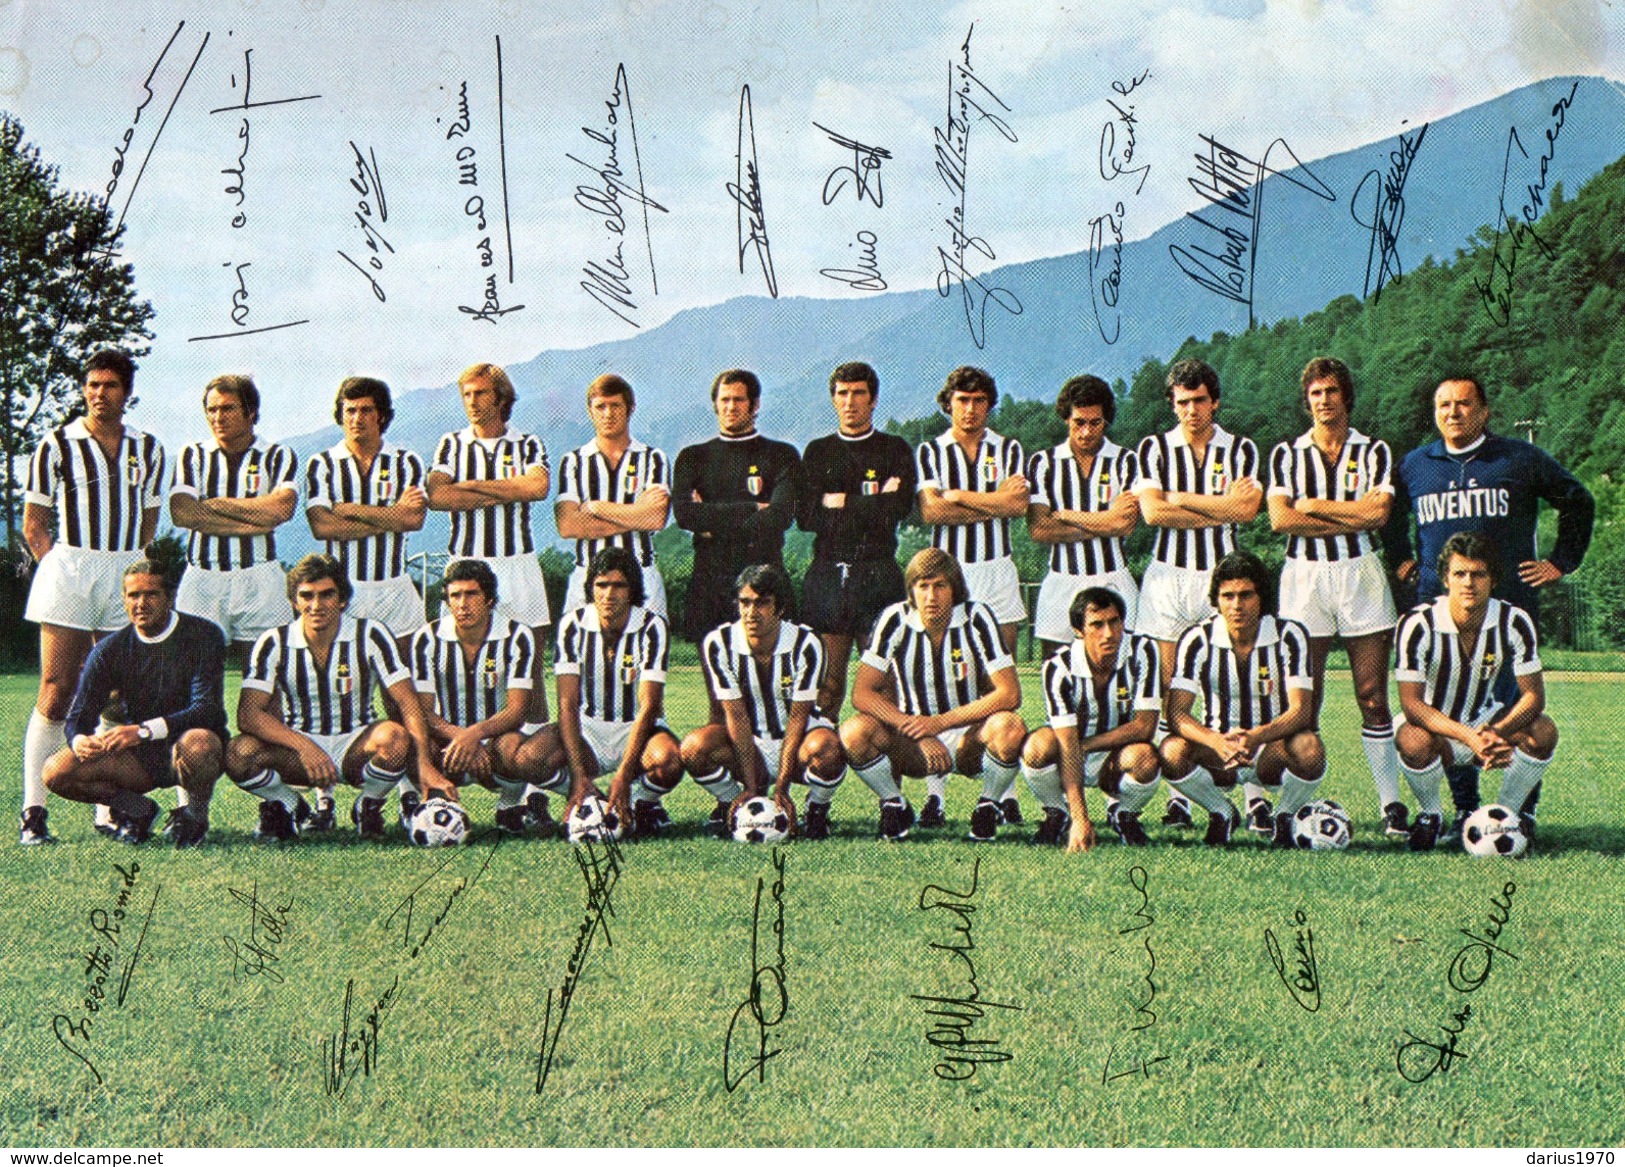 Autografi - Formazione della Juventus con autografi stagione 1973 - 1974 (  misura 22 cm. x 15,5 cm. )